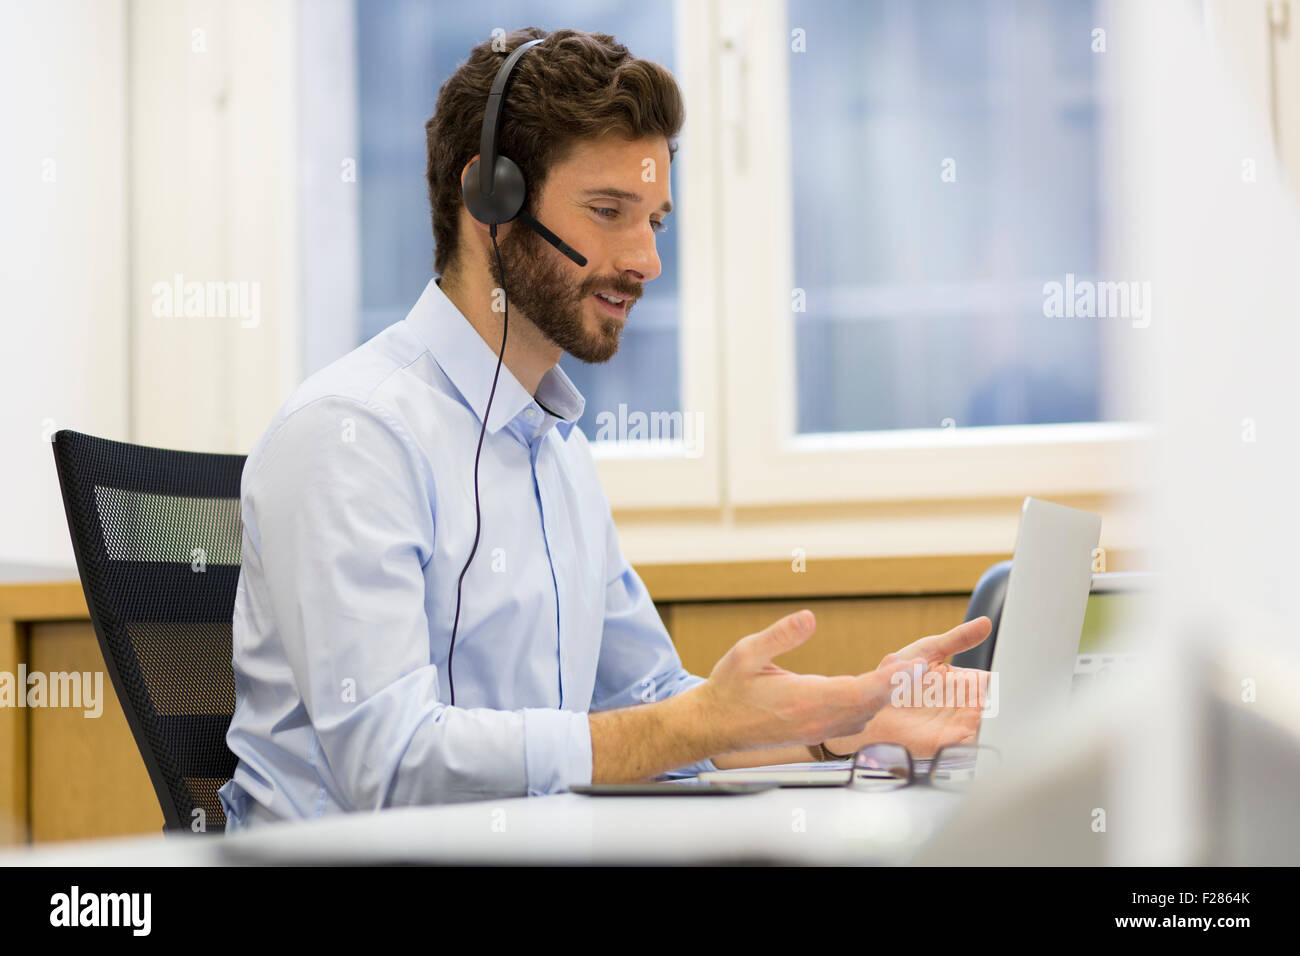 Hombre Barbado usando auriculares en videoconferencia Foto de stock